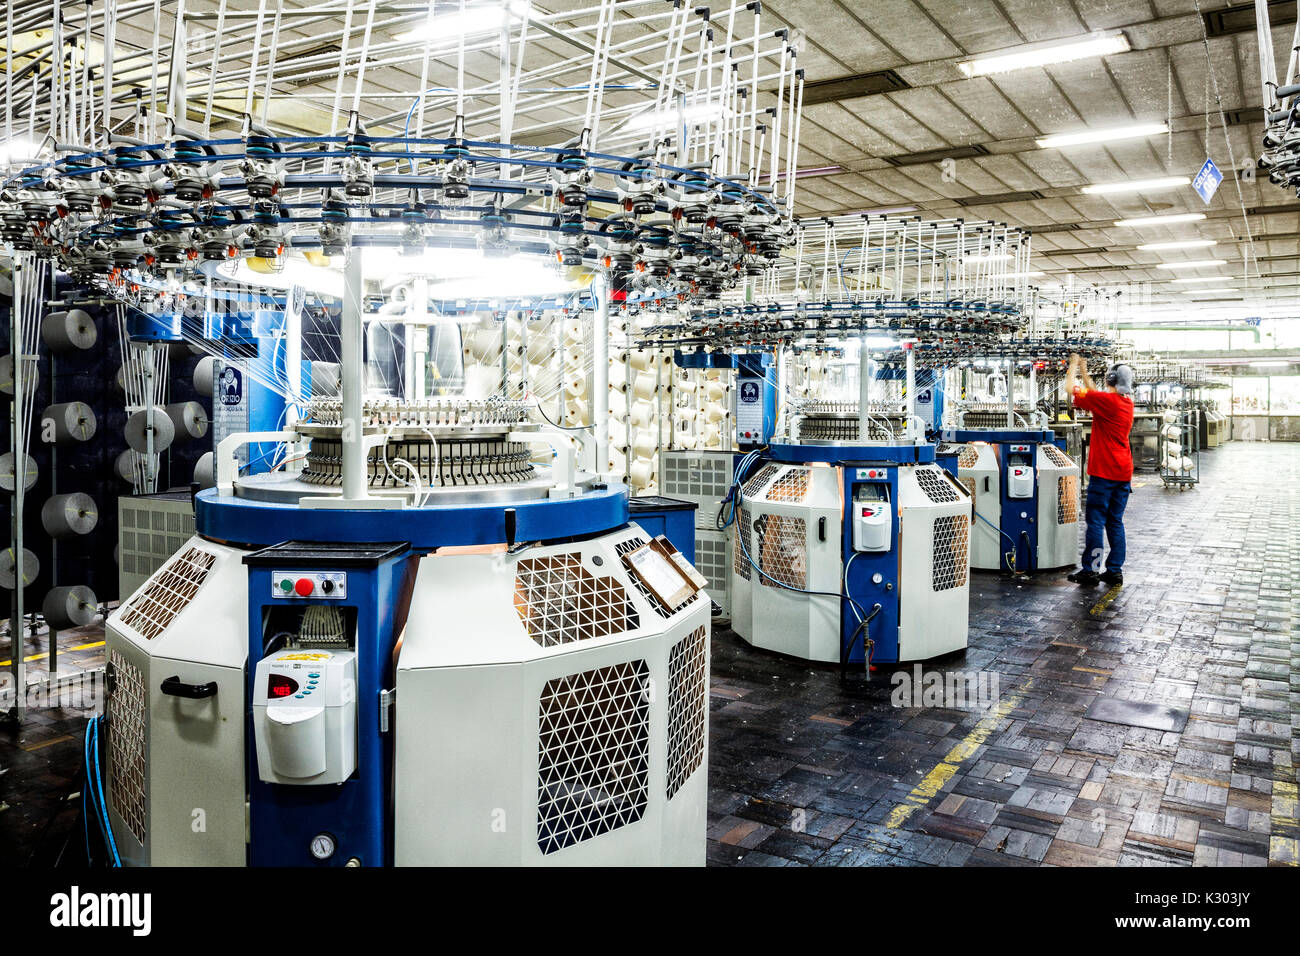 Maschinen zum Spinnen in einem brasilianischen Textilindustrie. Blumenau, Santa Catarina, Brasilien. Stockfoto